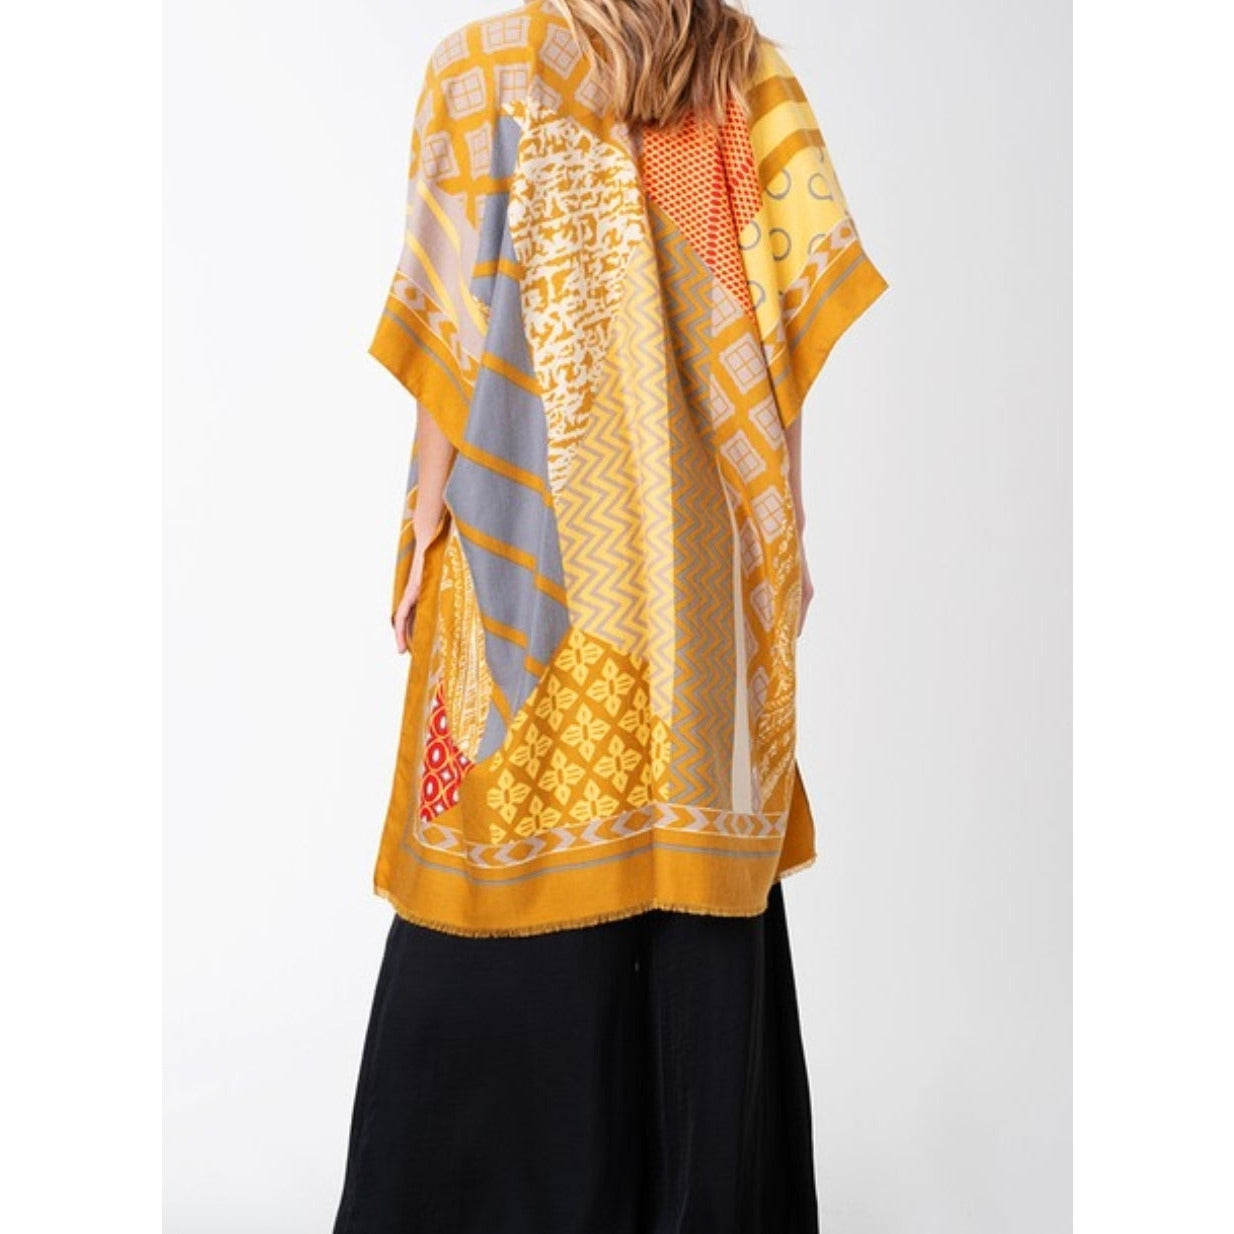 Najma Abstract Print Kimono - Ariya's Apparel and Accessories